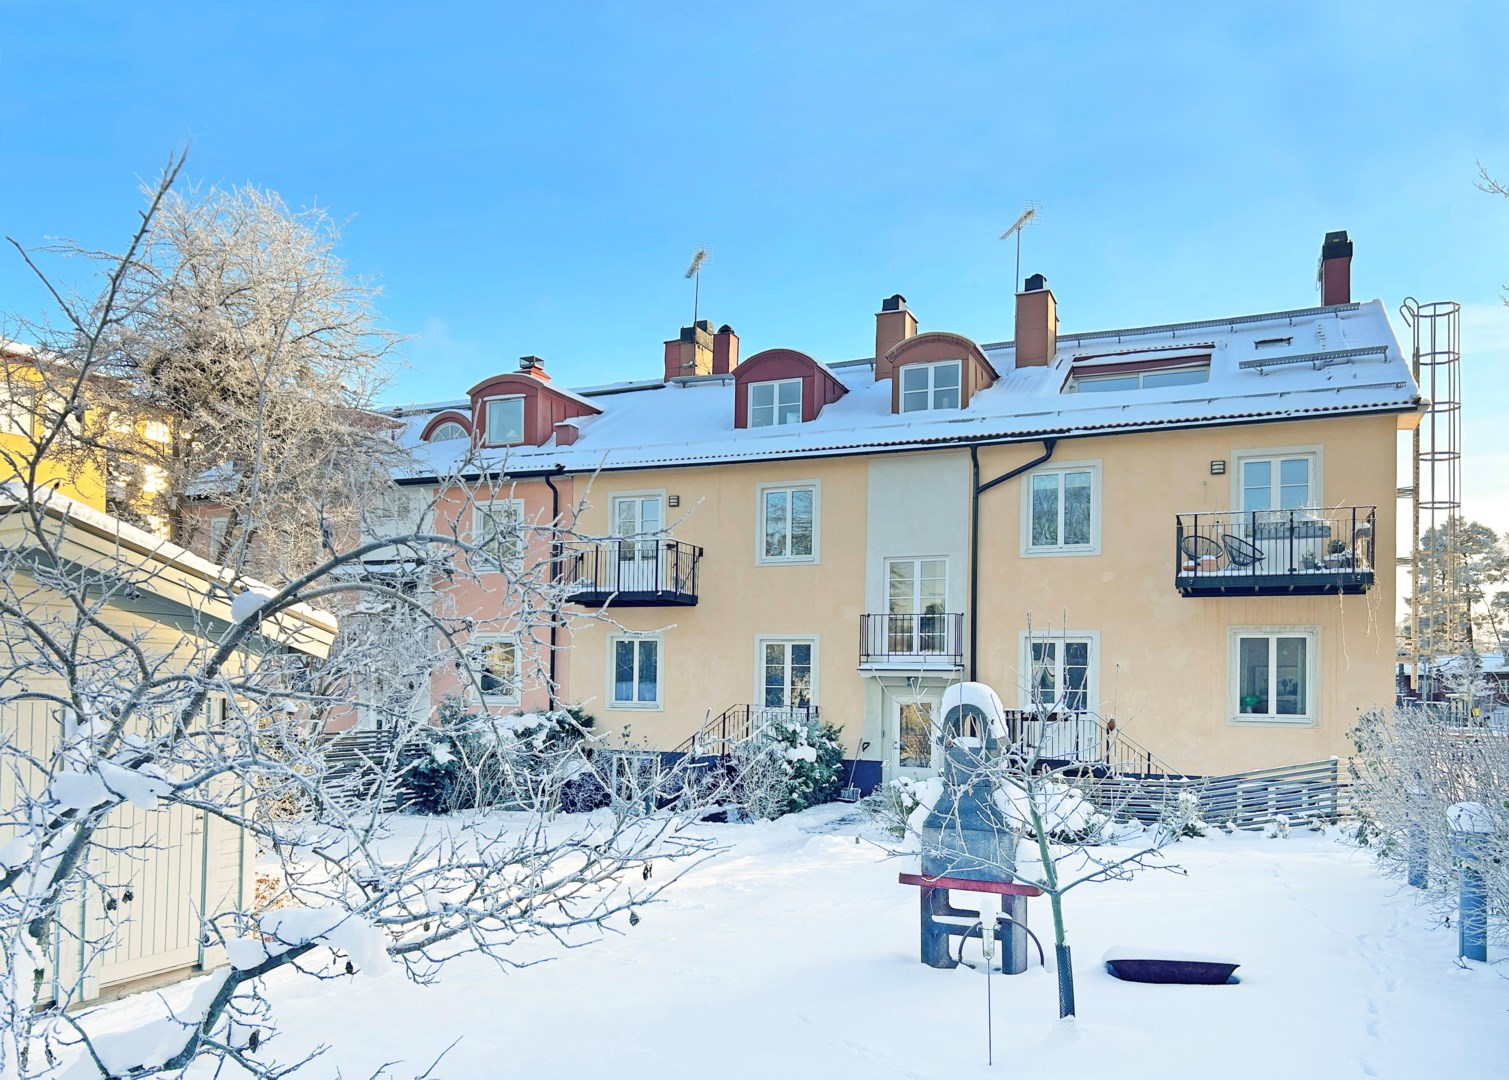 Bostadsbild från Höglandstorget 9, Såld i Bromma - Höglandet, Stockholm